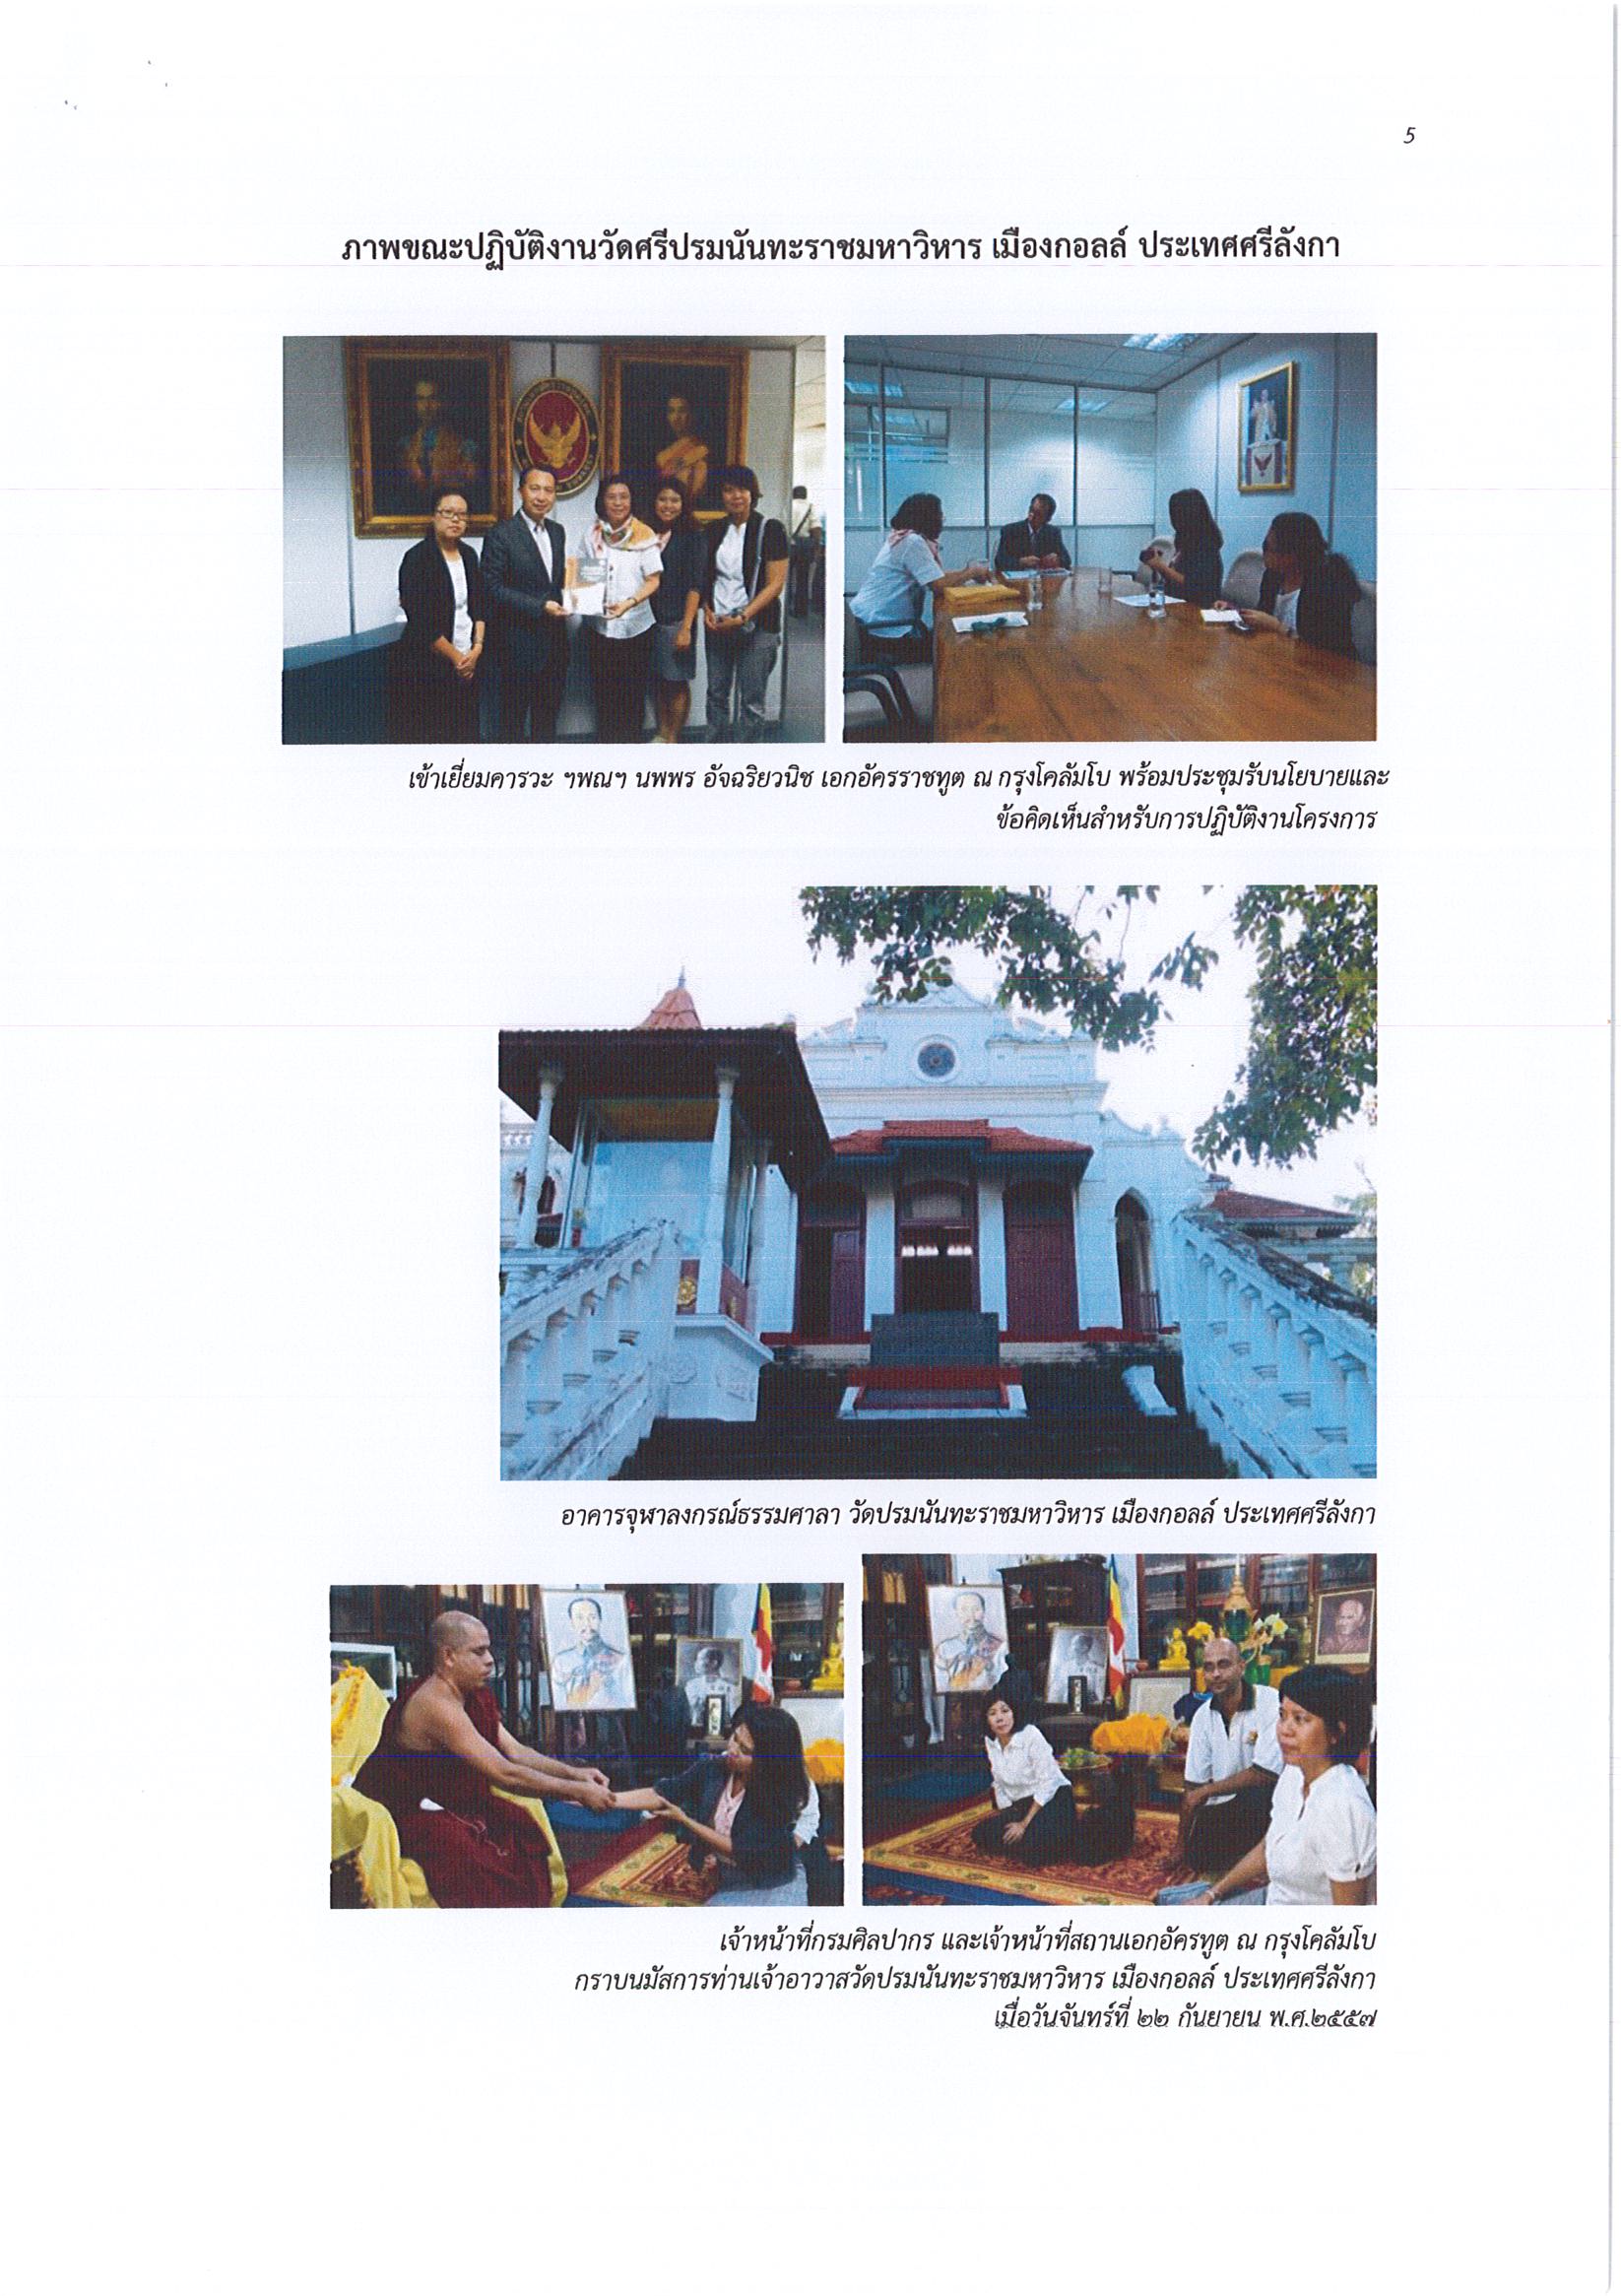 รายงานการเดินทางไปราชการ ณ สาธารณรัฐสังคมนิยมประชาธิปไตยศรีลังกา ระหว่างวันที่ 21 – 28 กันยายน 2558 โครงการปรับปรุงจุฬาลงกรณ์ธรรมศาลา วัดศรีปรมนันทะราชมหาวิหาร กรุงโคลัมโบ